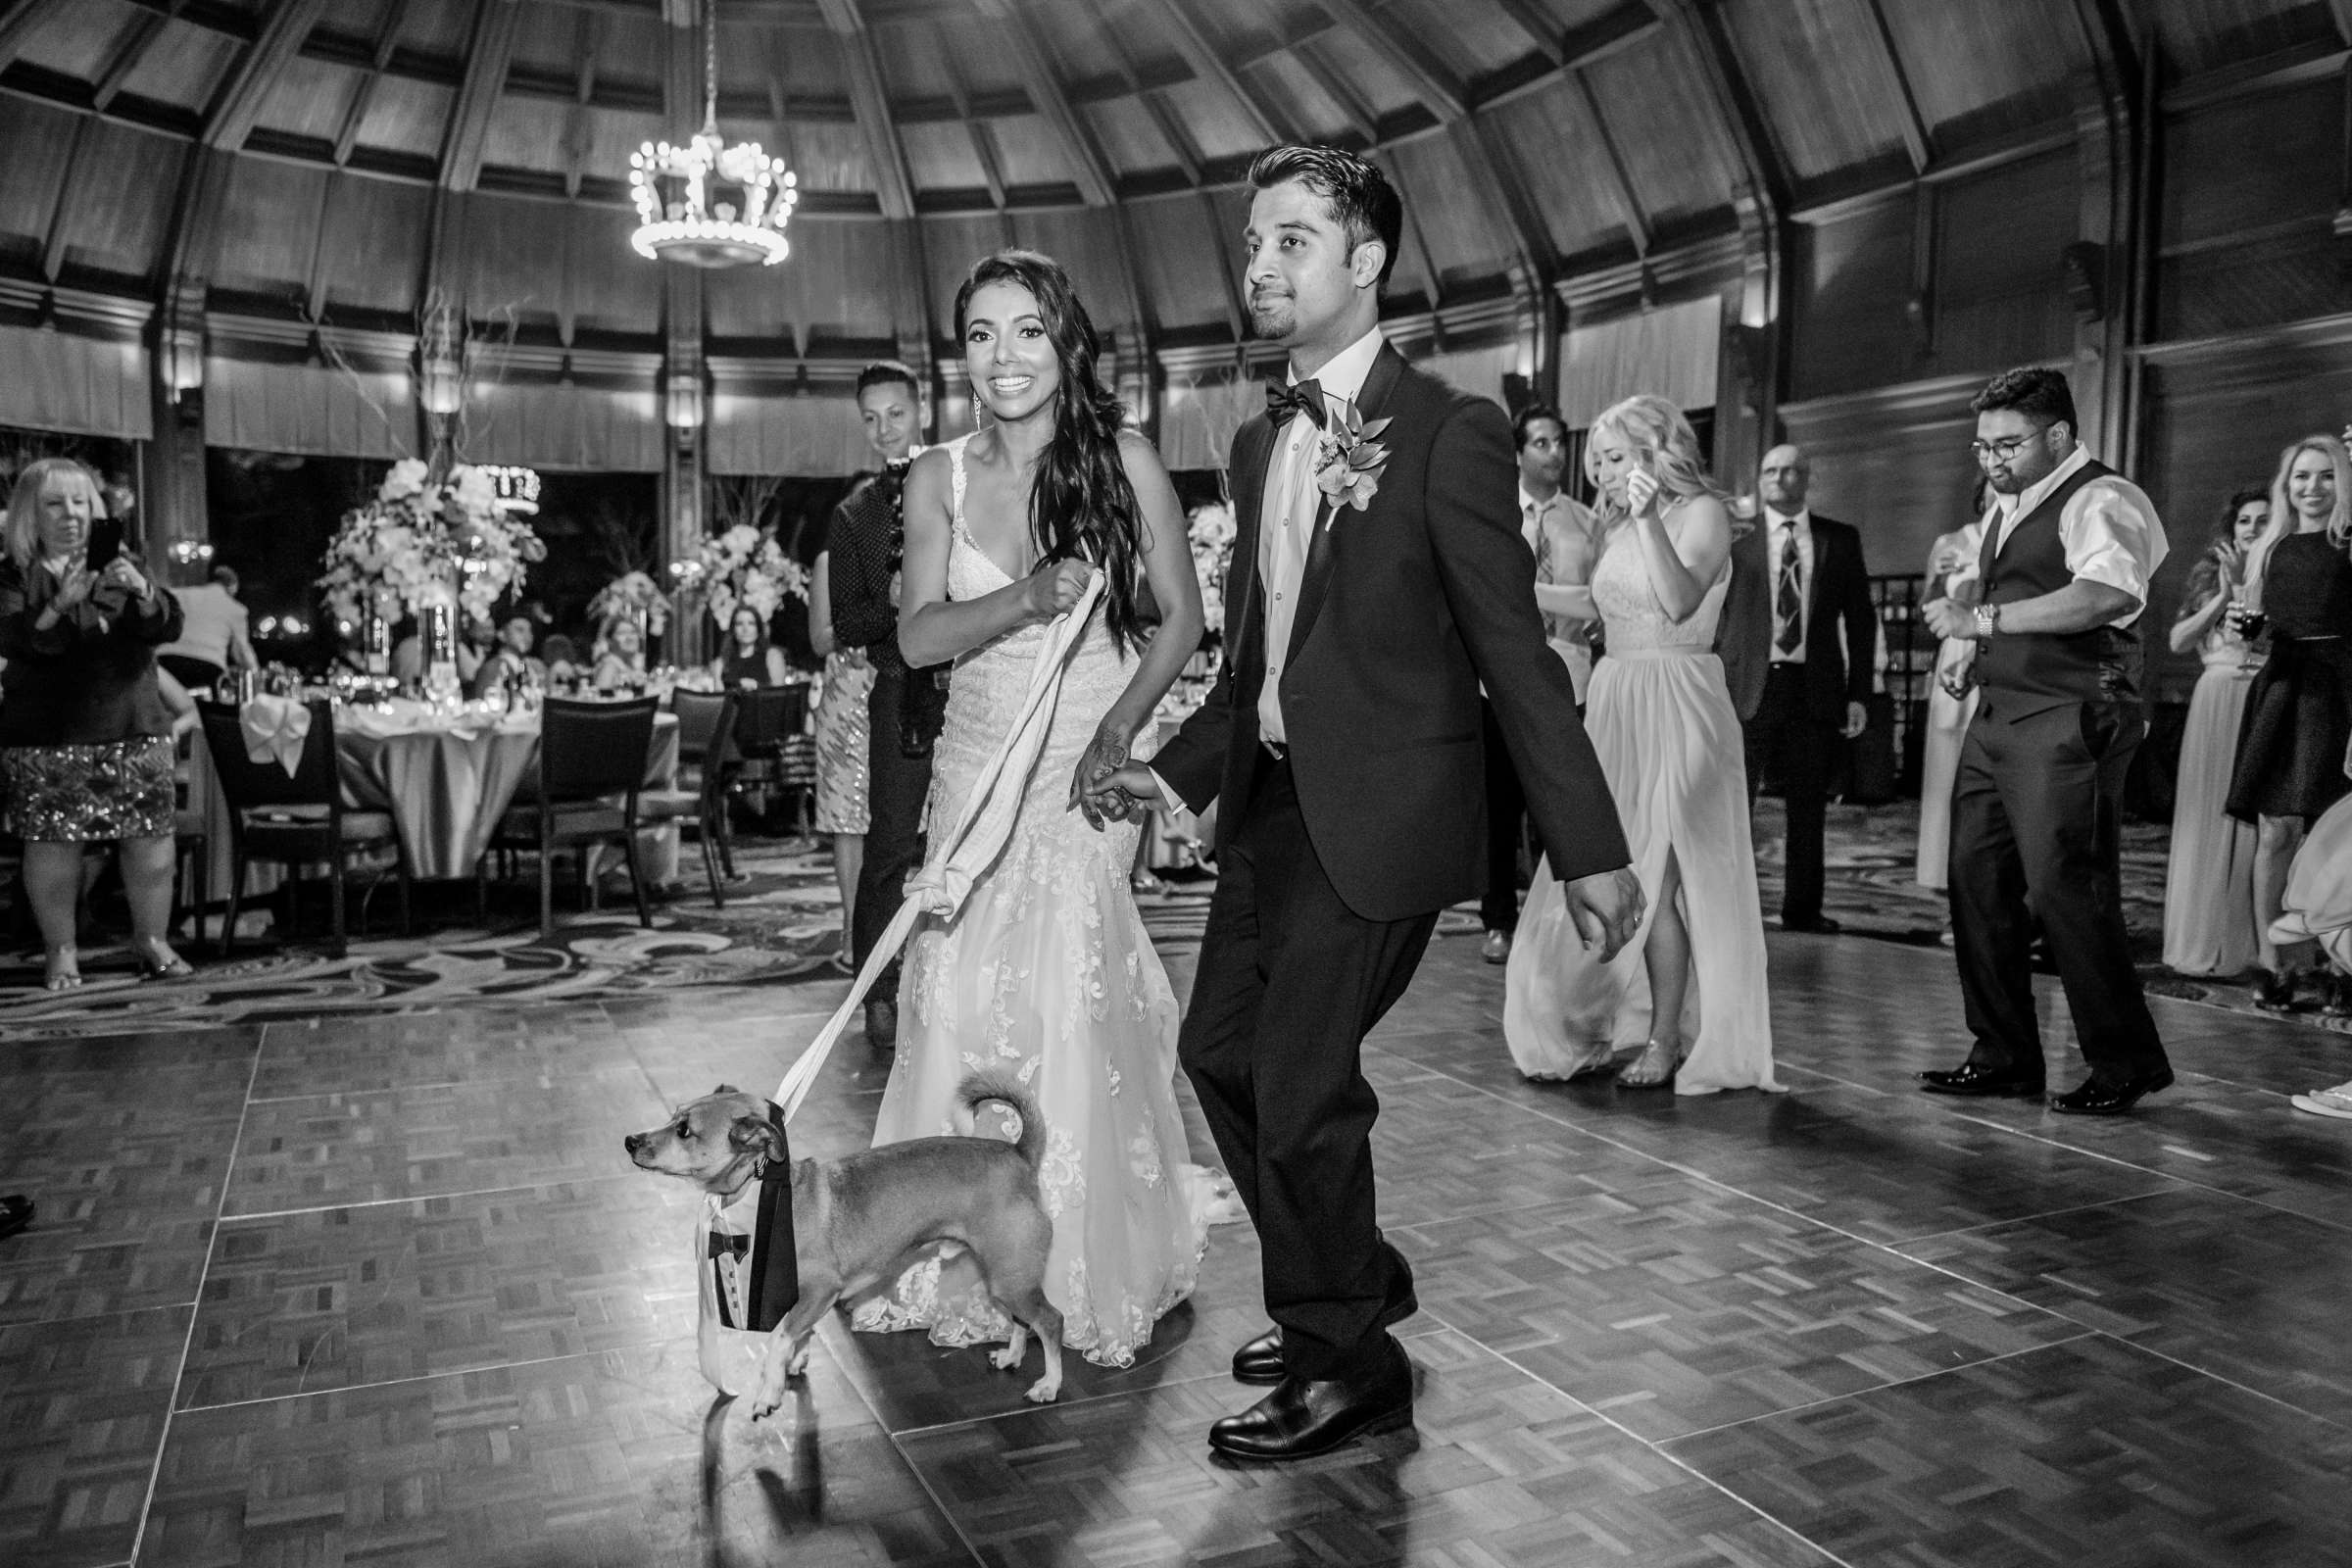 Hotel Del Coronado Wedding, Sabrina and Gehaan Wedding Photo #409174 by True Photography